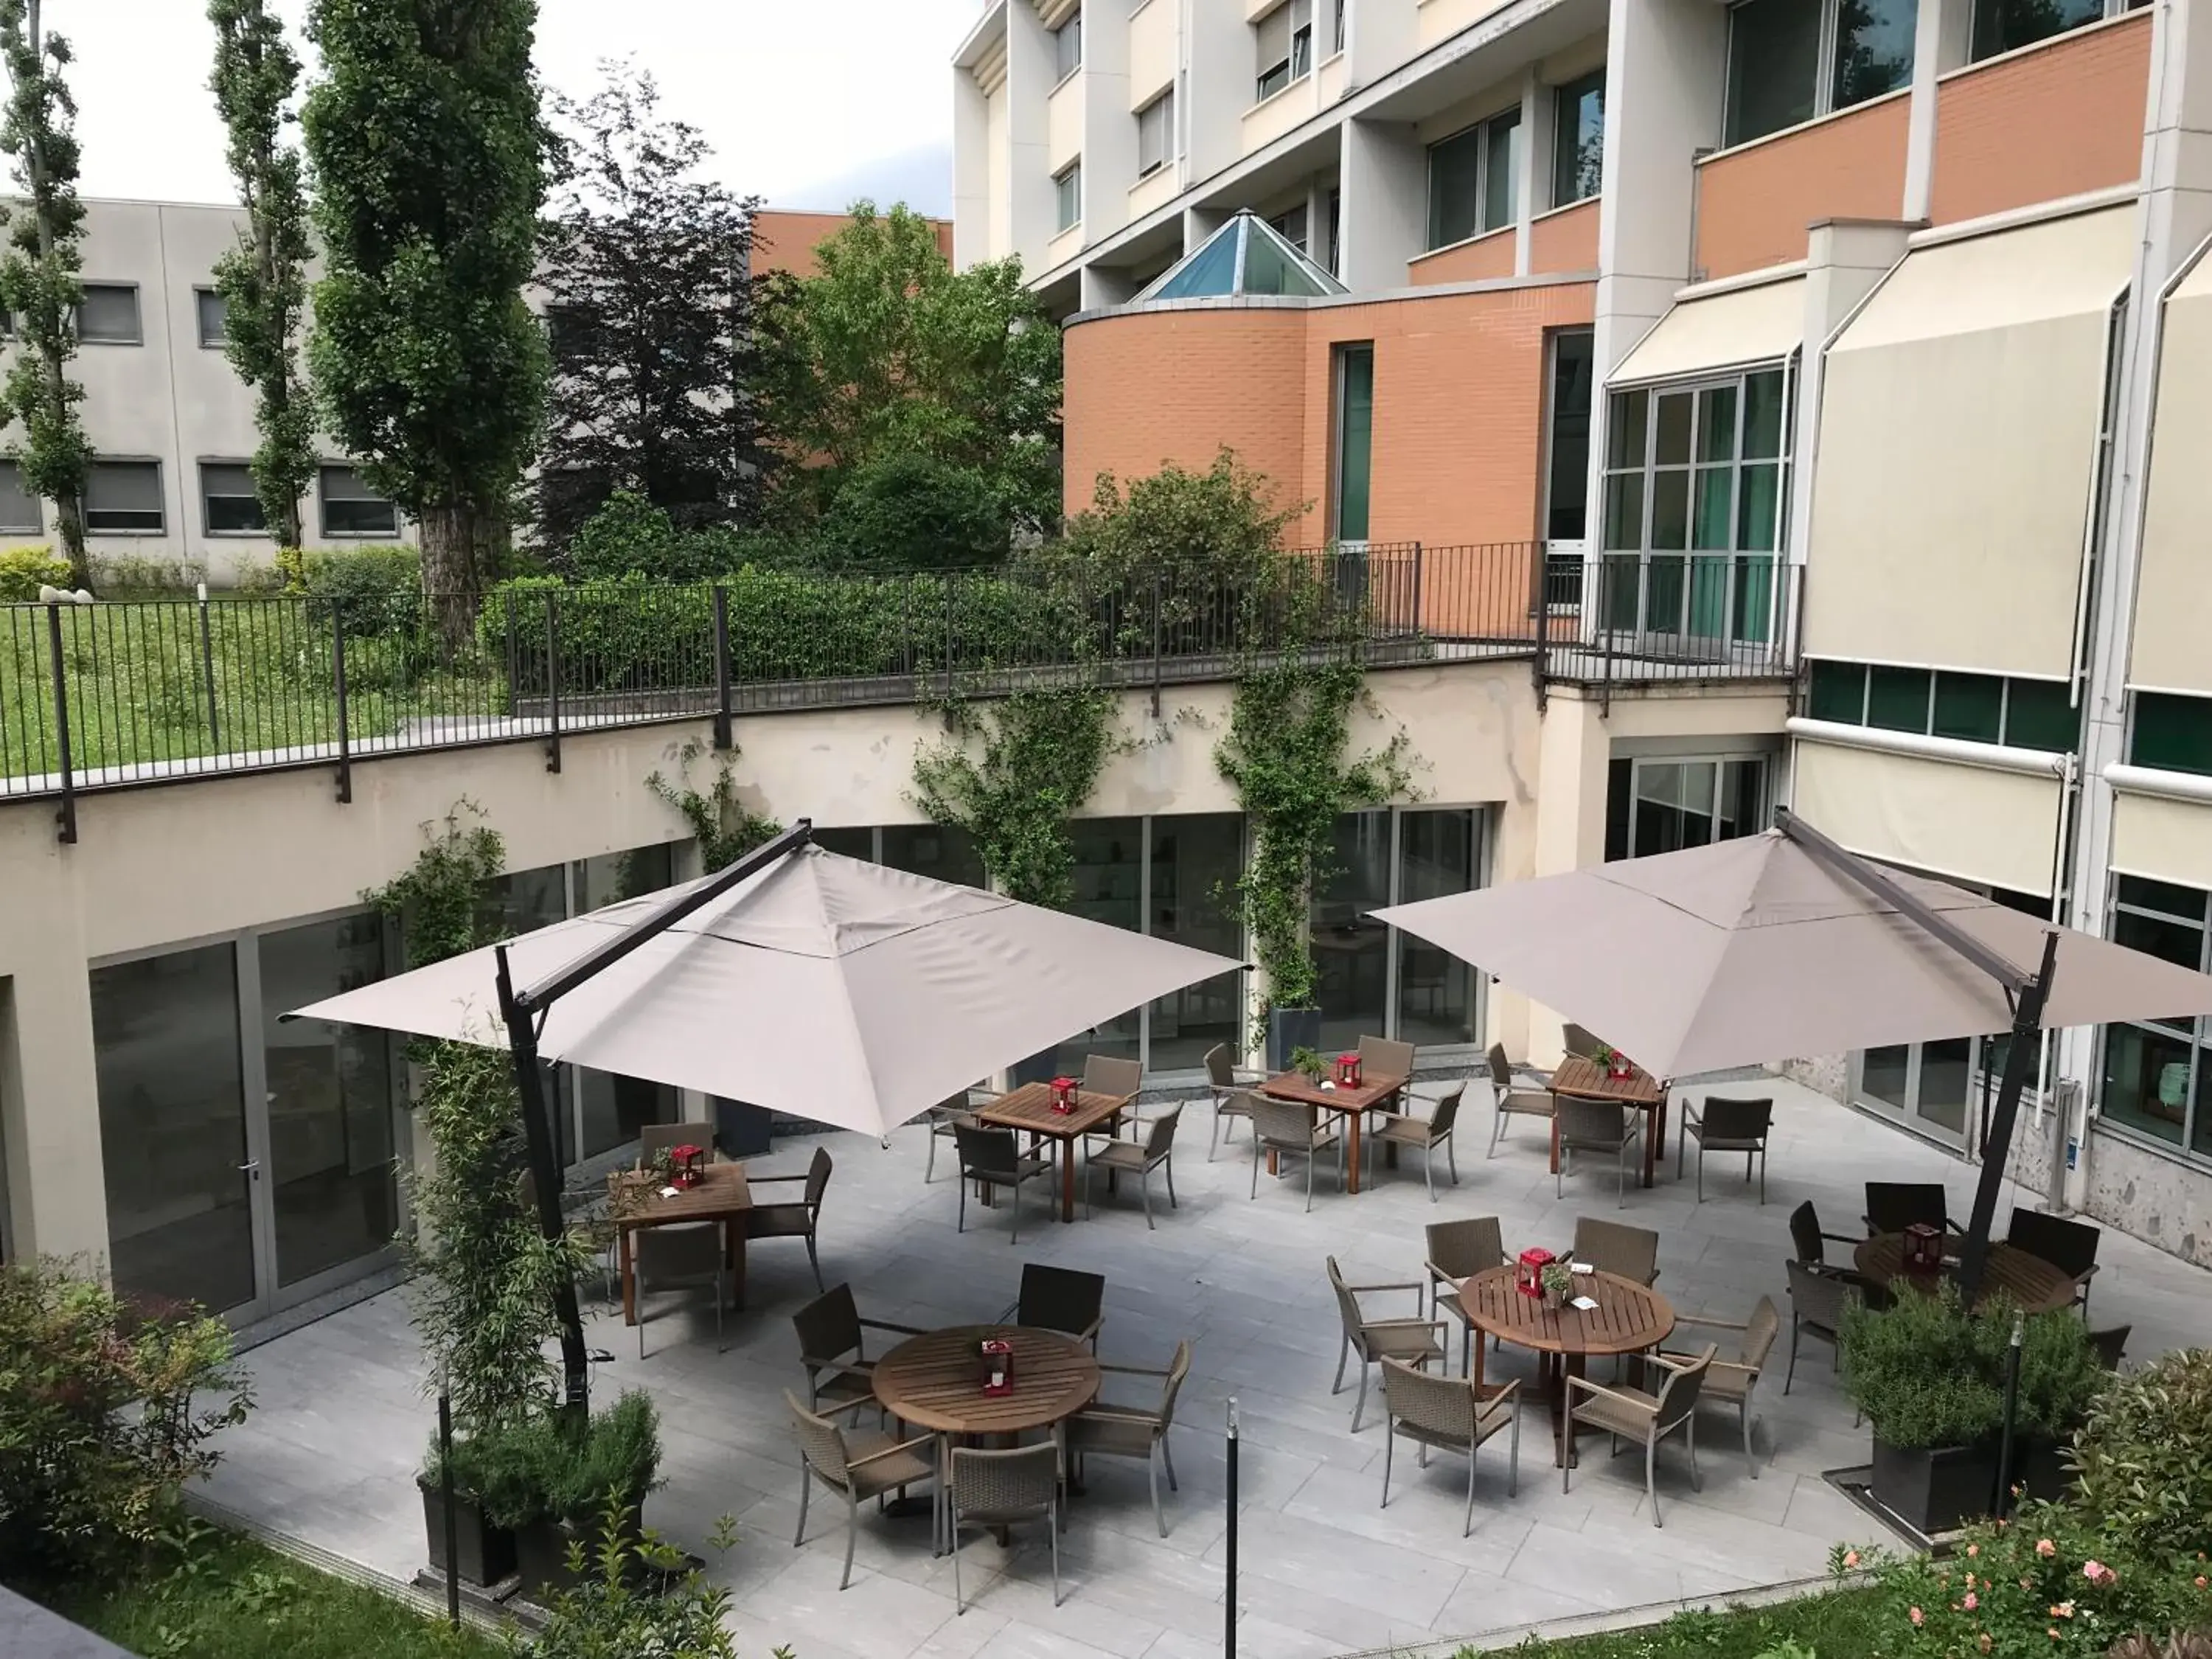 Balcony/Terrace in Best Western Plus Hotel Le Favaglie